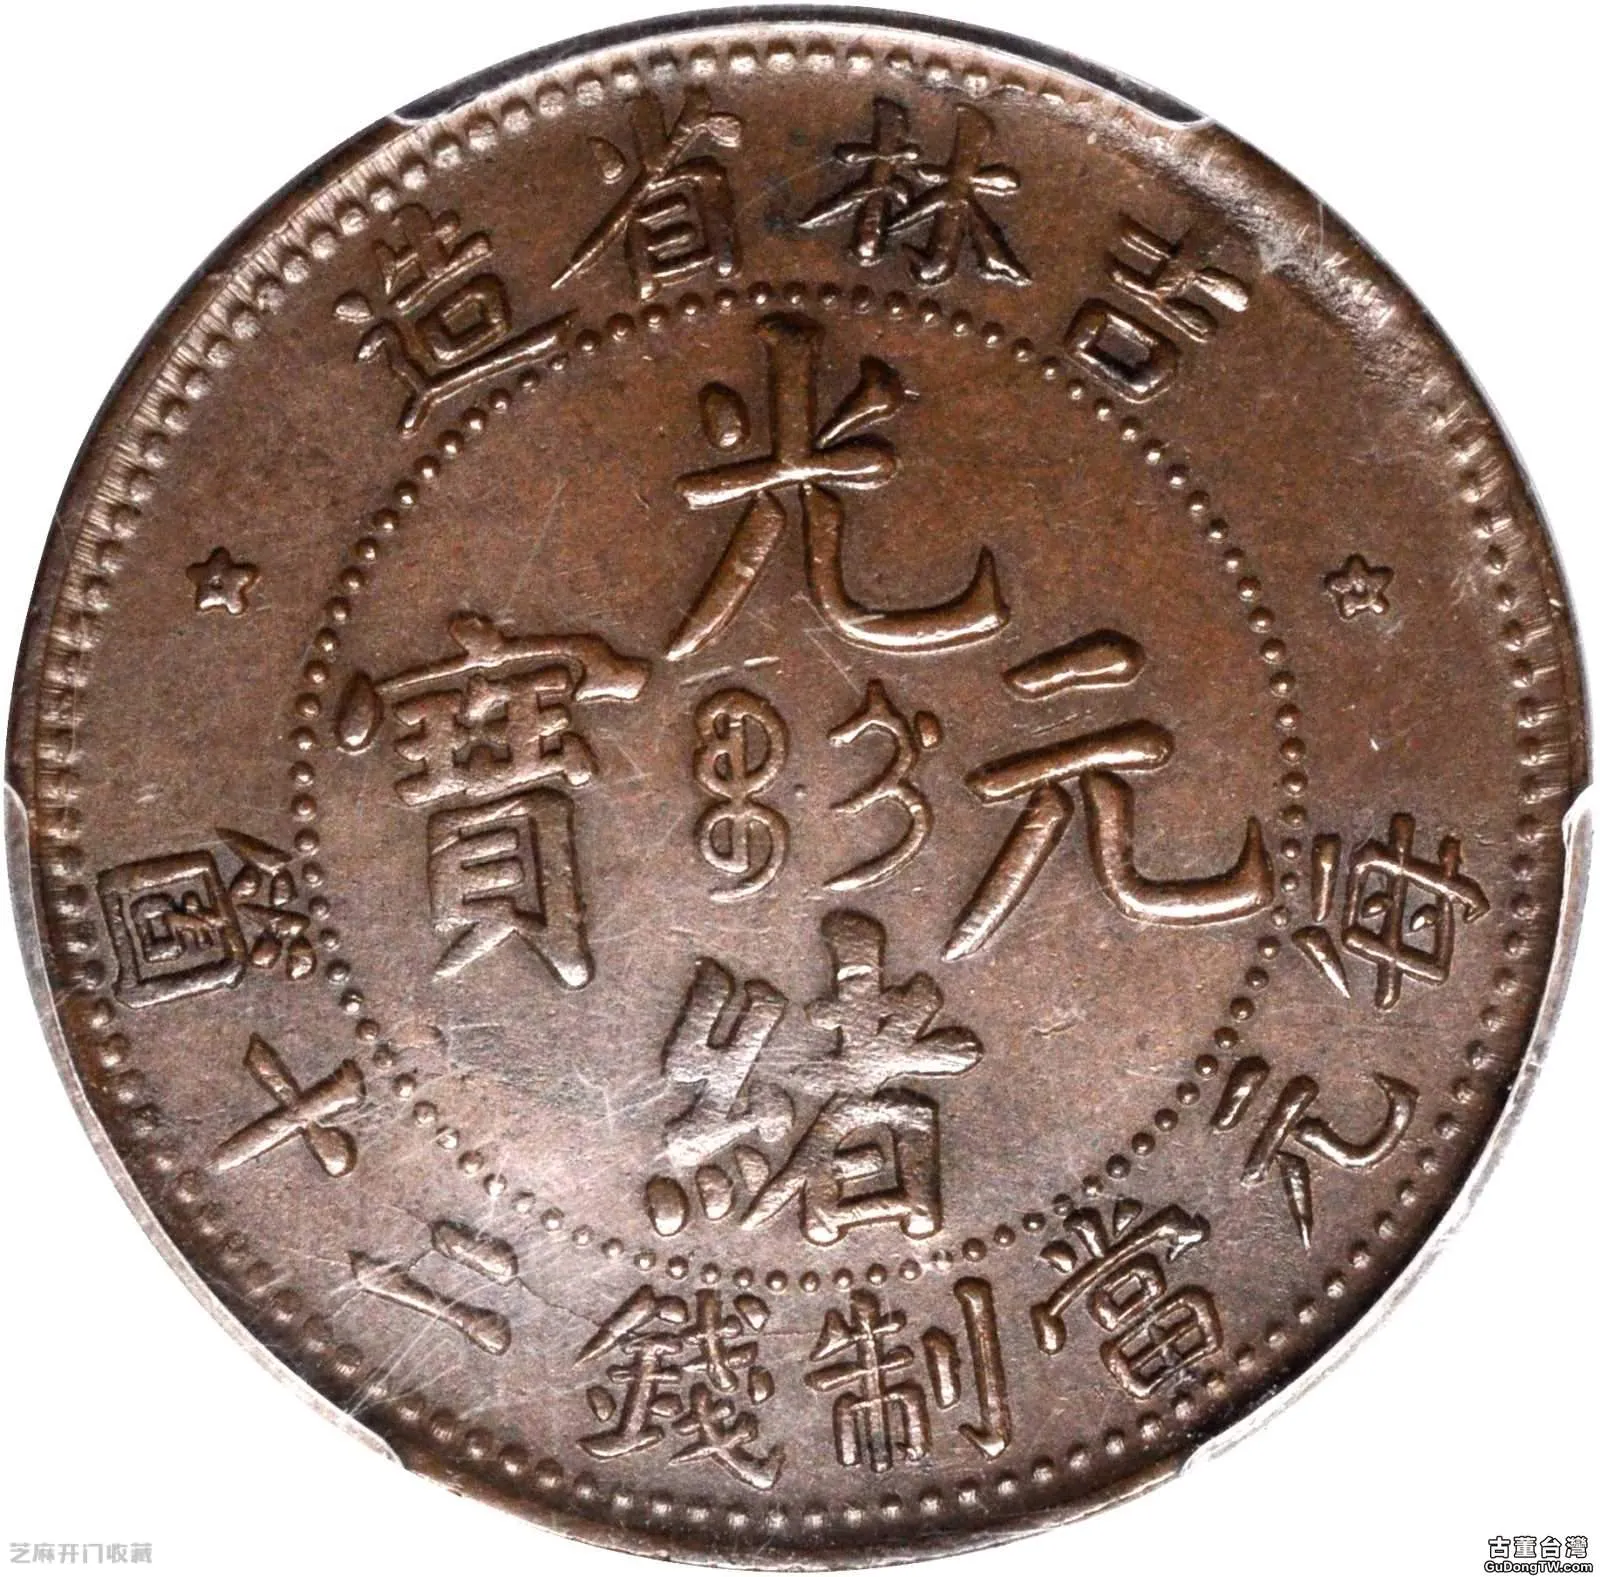 吉林省造銅幣當制錢二十箇值錢嗎